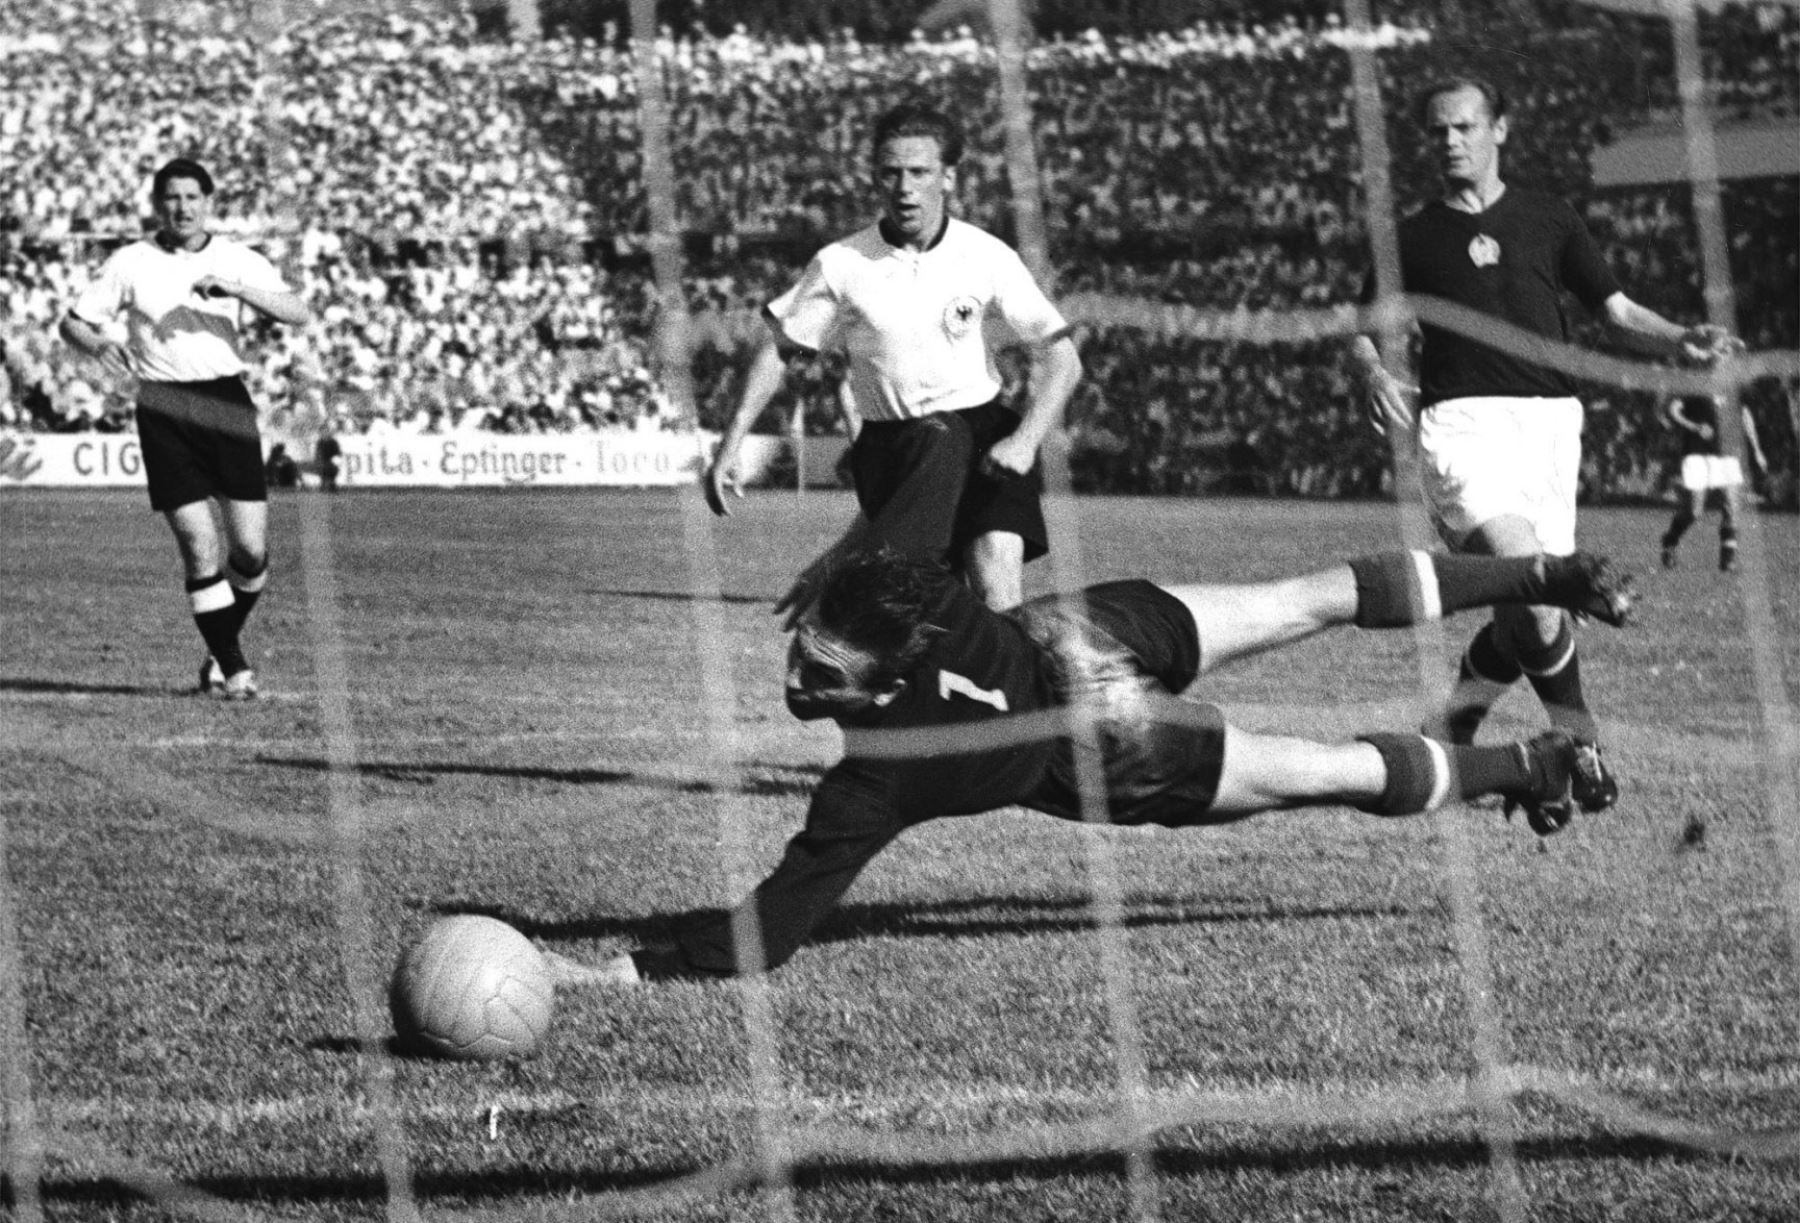 Helmut Rahn - República Federal de Alemania. 10 goles en 10 partidos. Participó en los mundiales de 1954 y 1958. Fue campeón en Suiza 1954. Foto: ANDINA/archivo